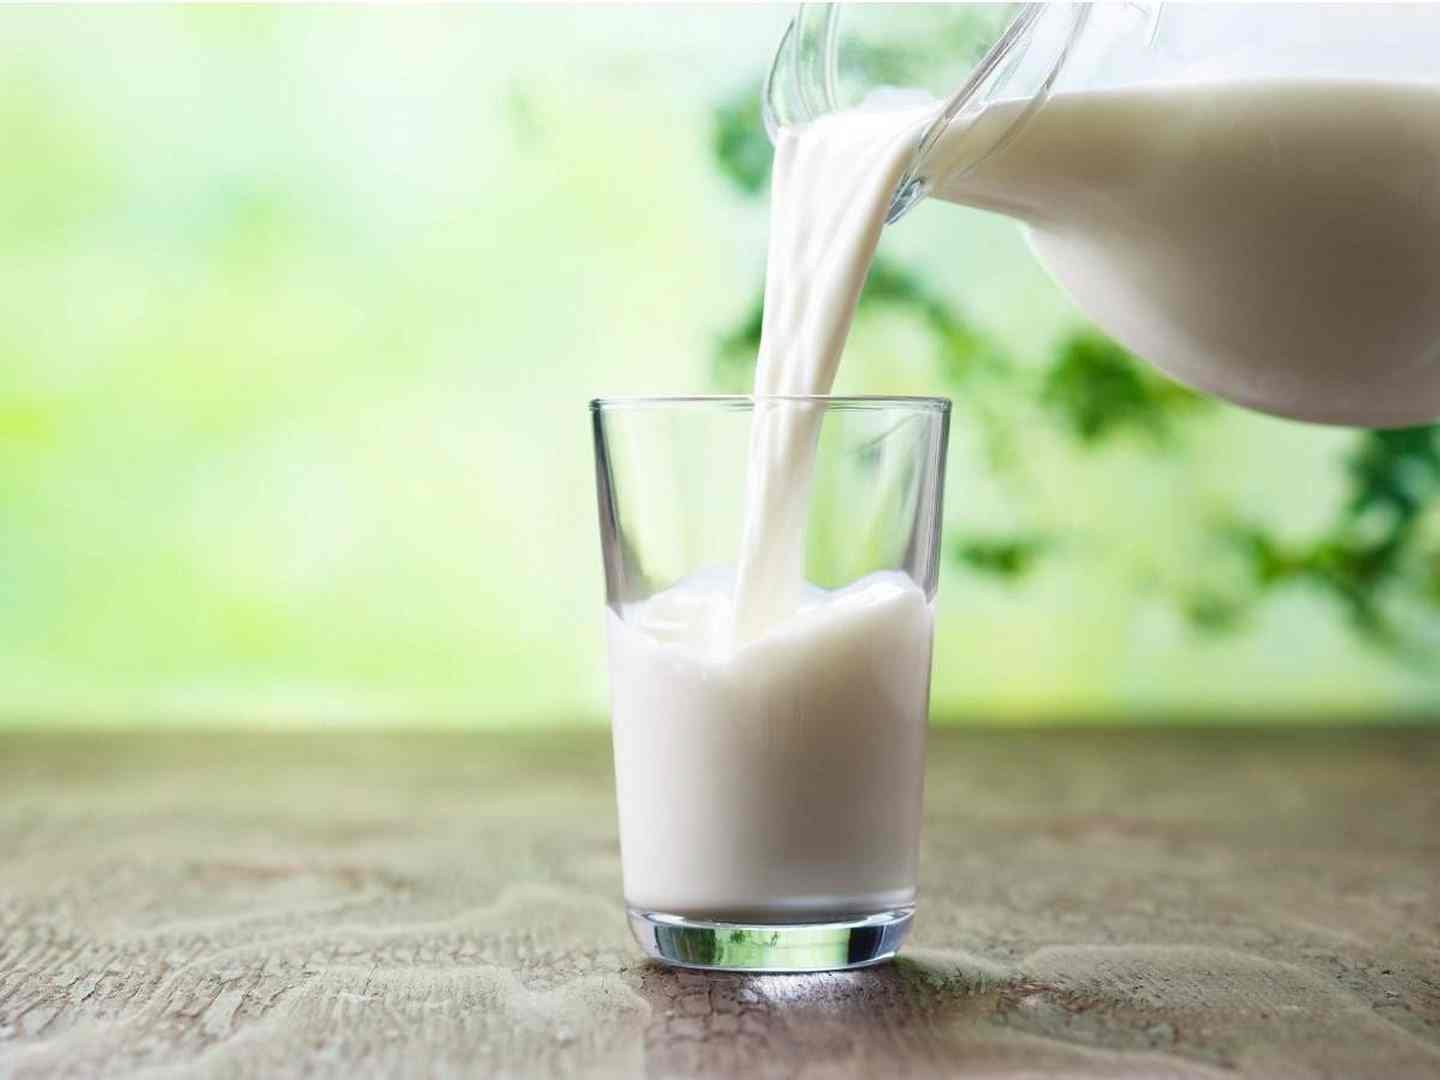 Nabeul: Arrestation d’un homme et saisie de 2 880 litres de lait subventionné (Déclaration)